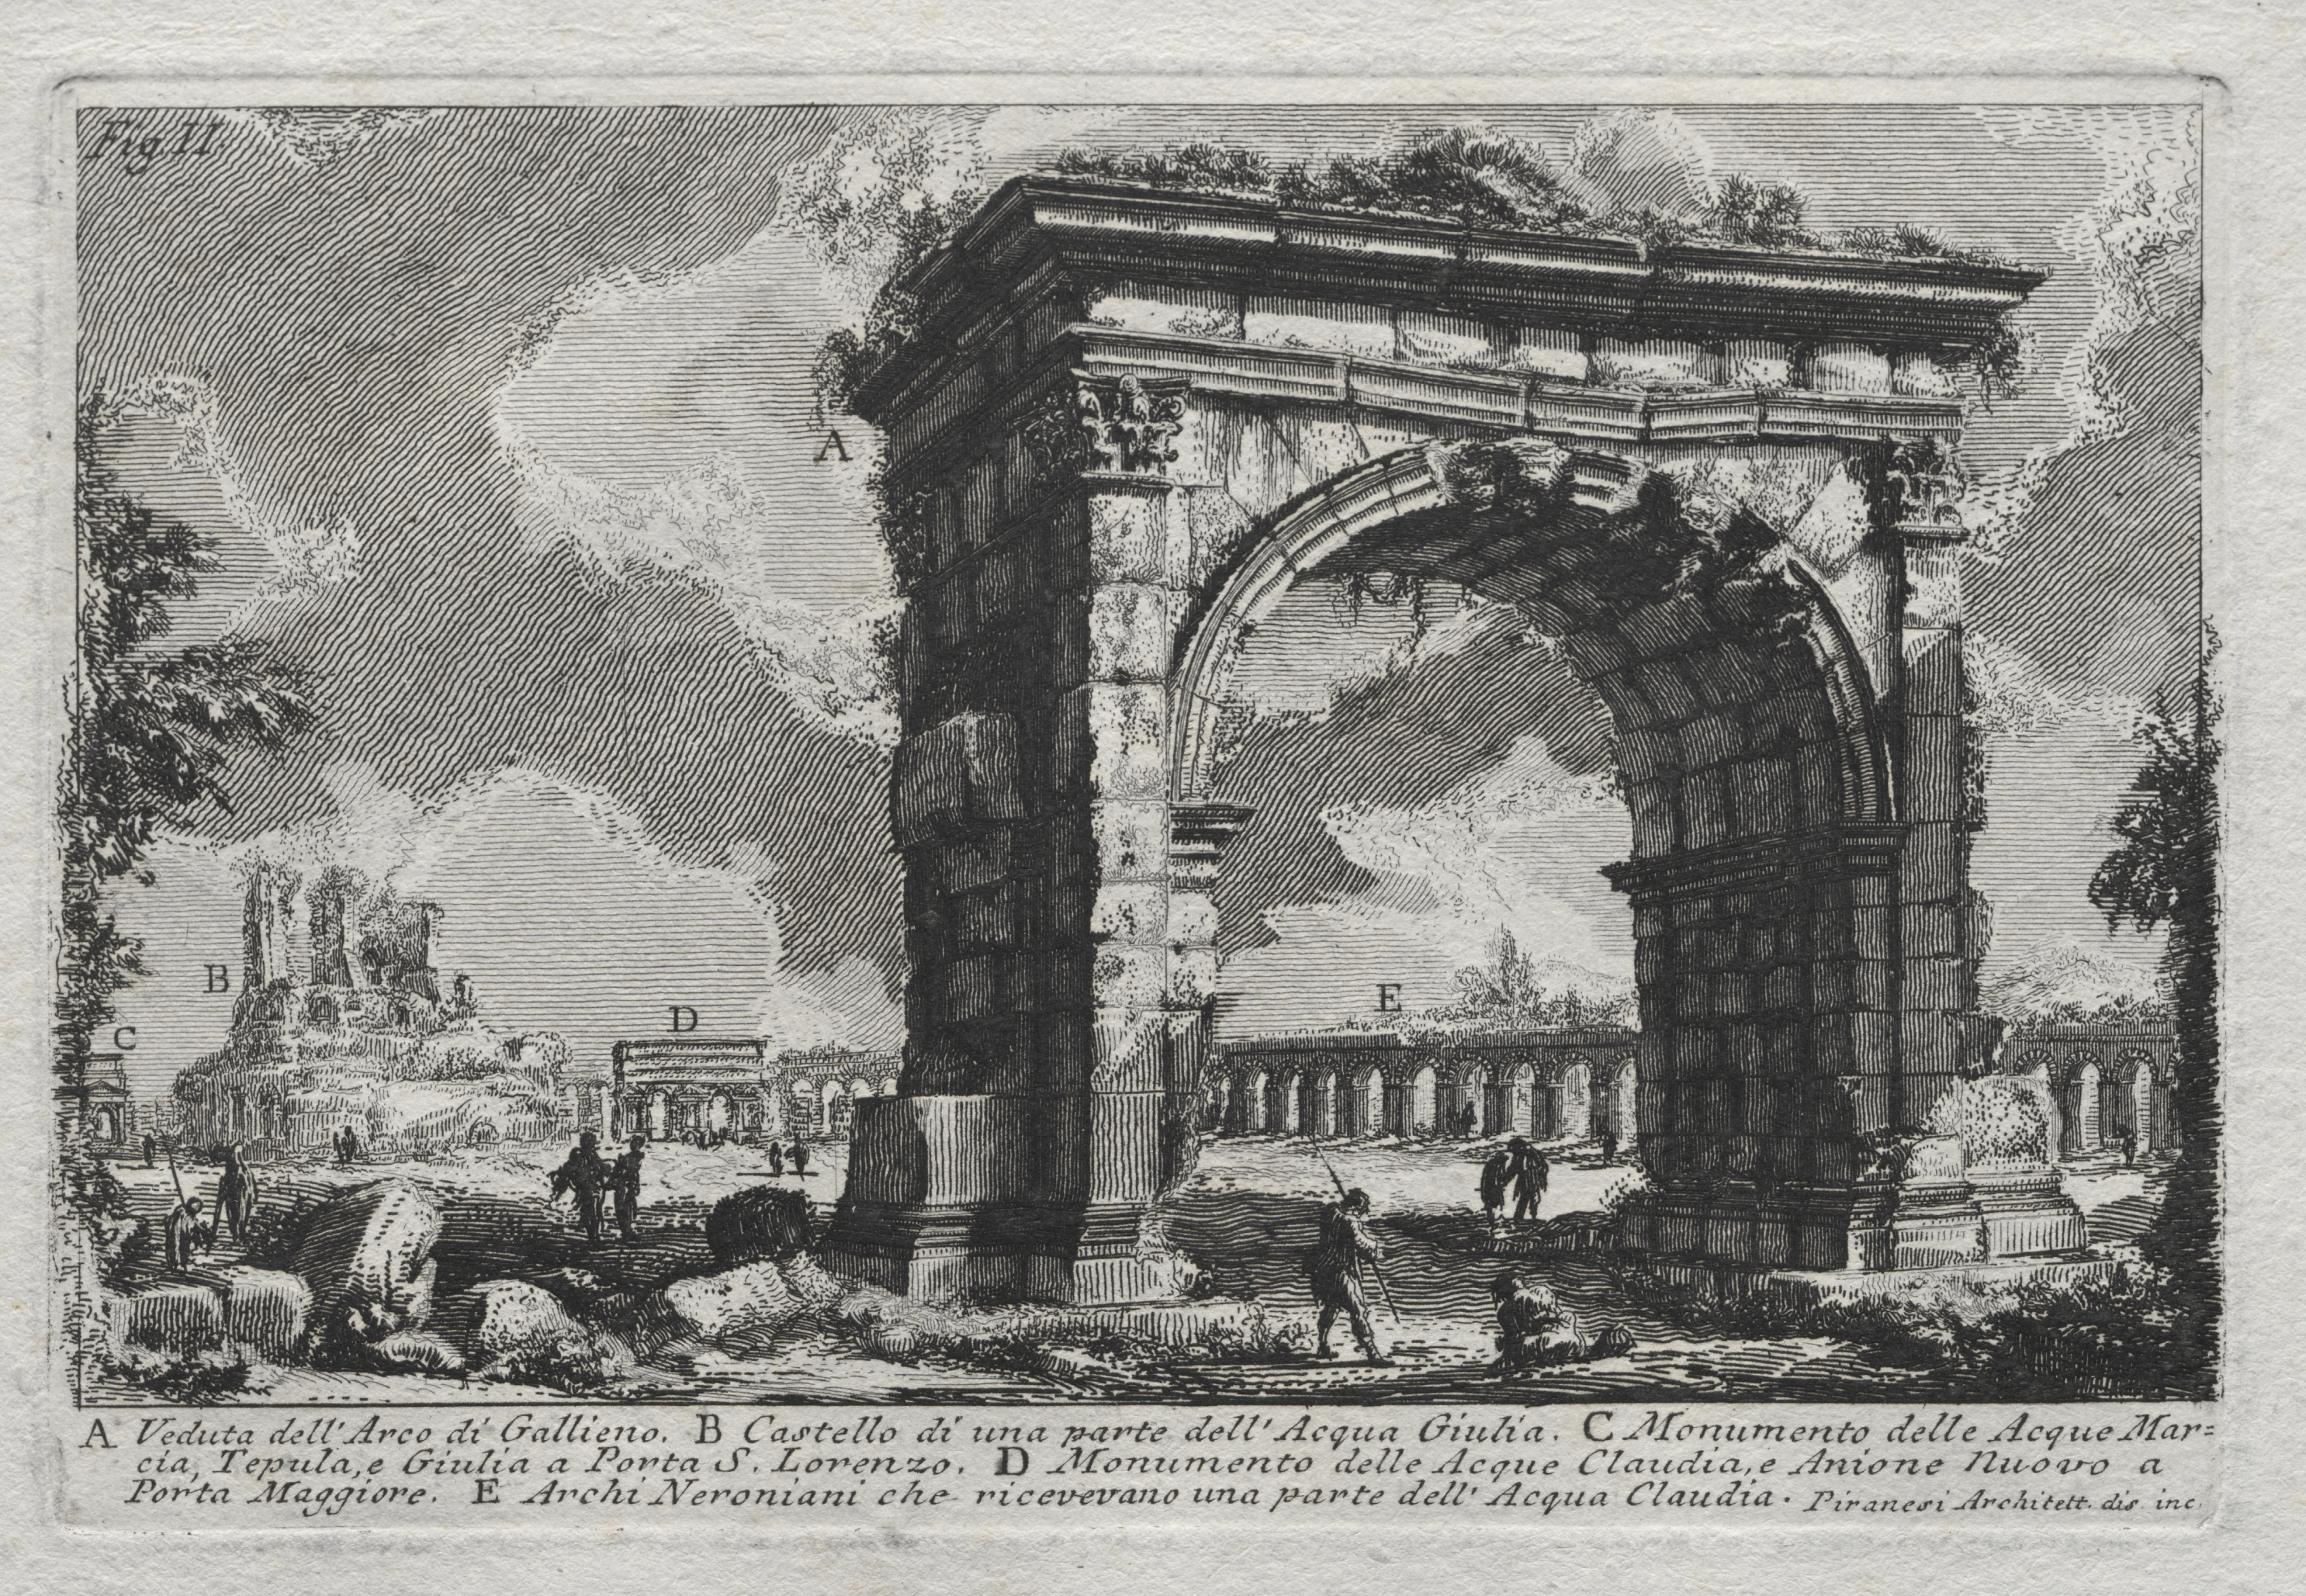 Veduta dell'Arco di Gallieno